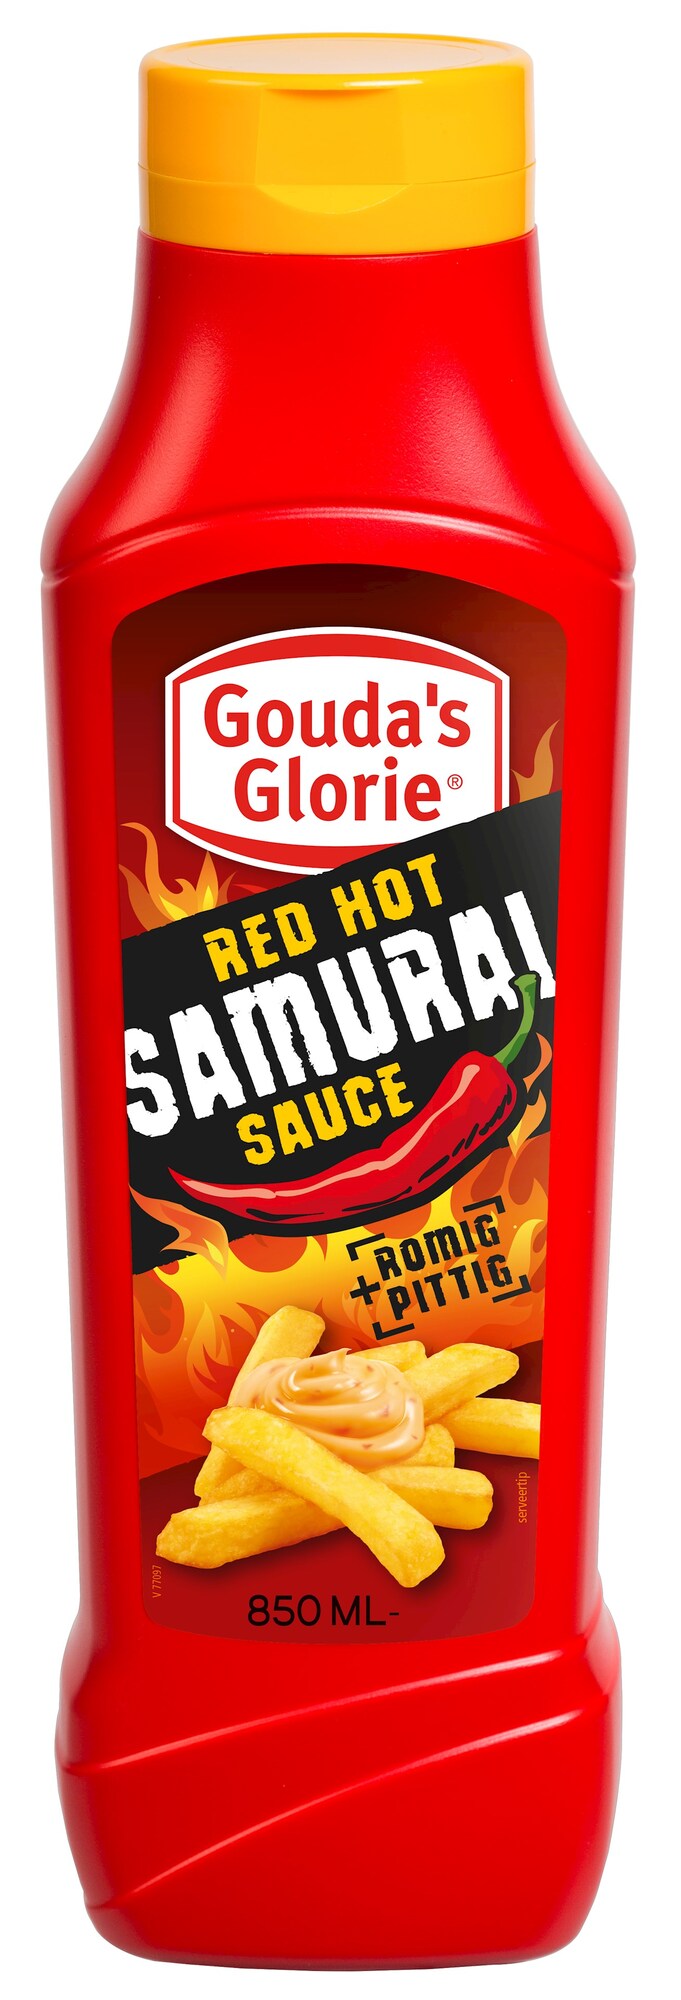 71149 Red hot samuraisaus tube 1x850 ml